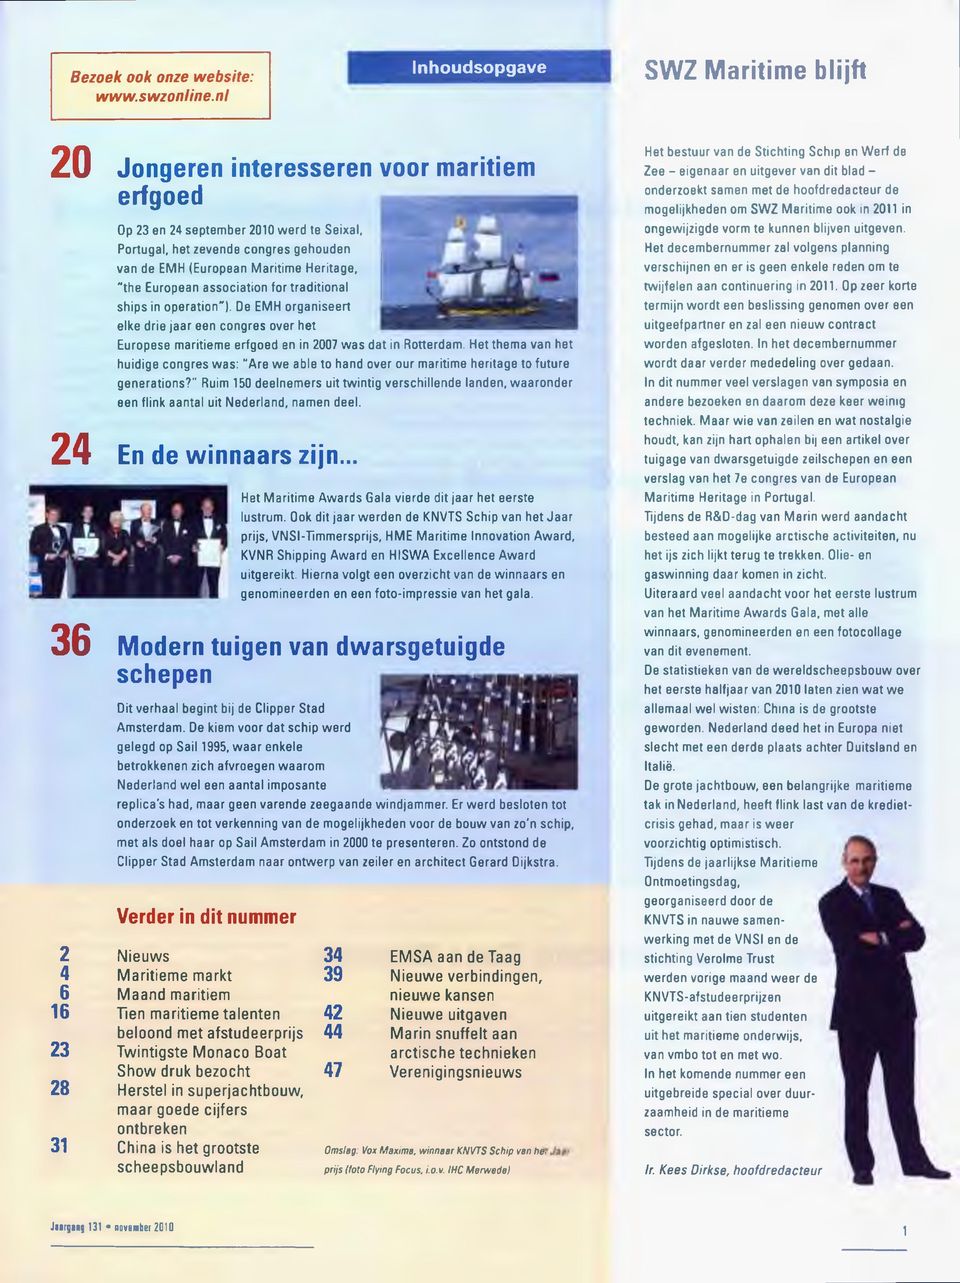 Heritage, "the European association for traditional ships in operation ). De EMH organiseert elke drie jaar een congres over het Europese maritieme erfgoed en in 2007 was dat in Rotterdam.